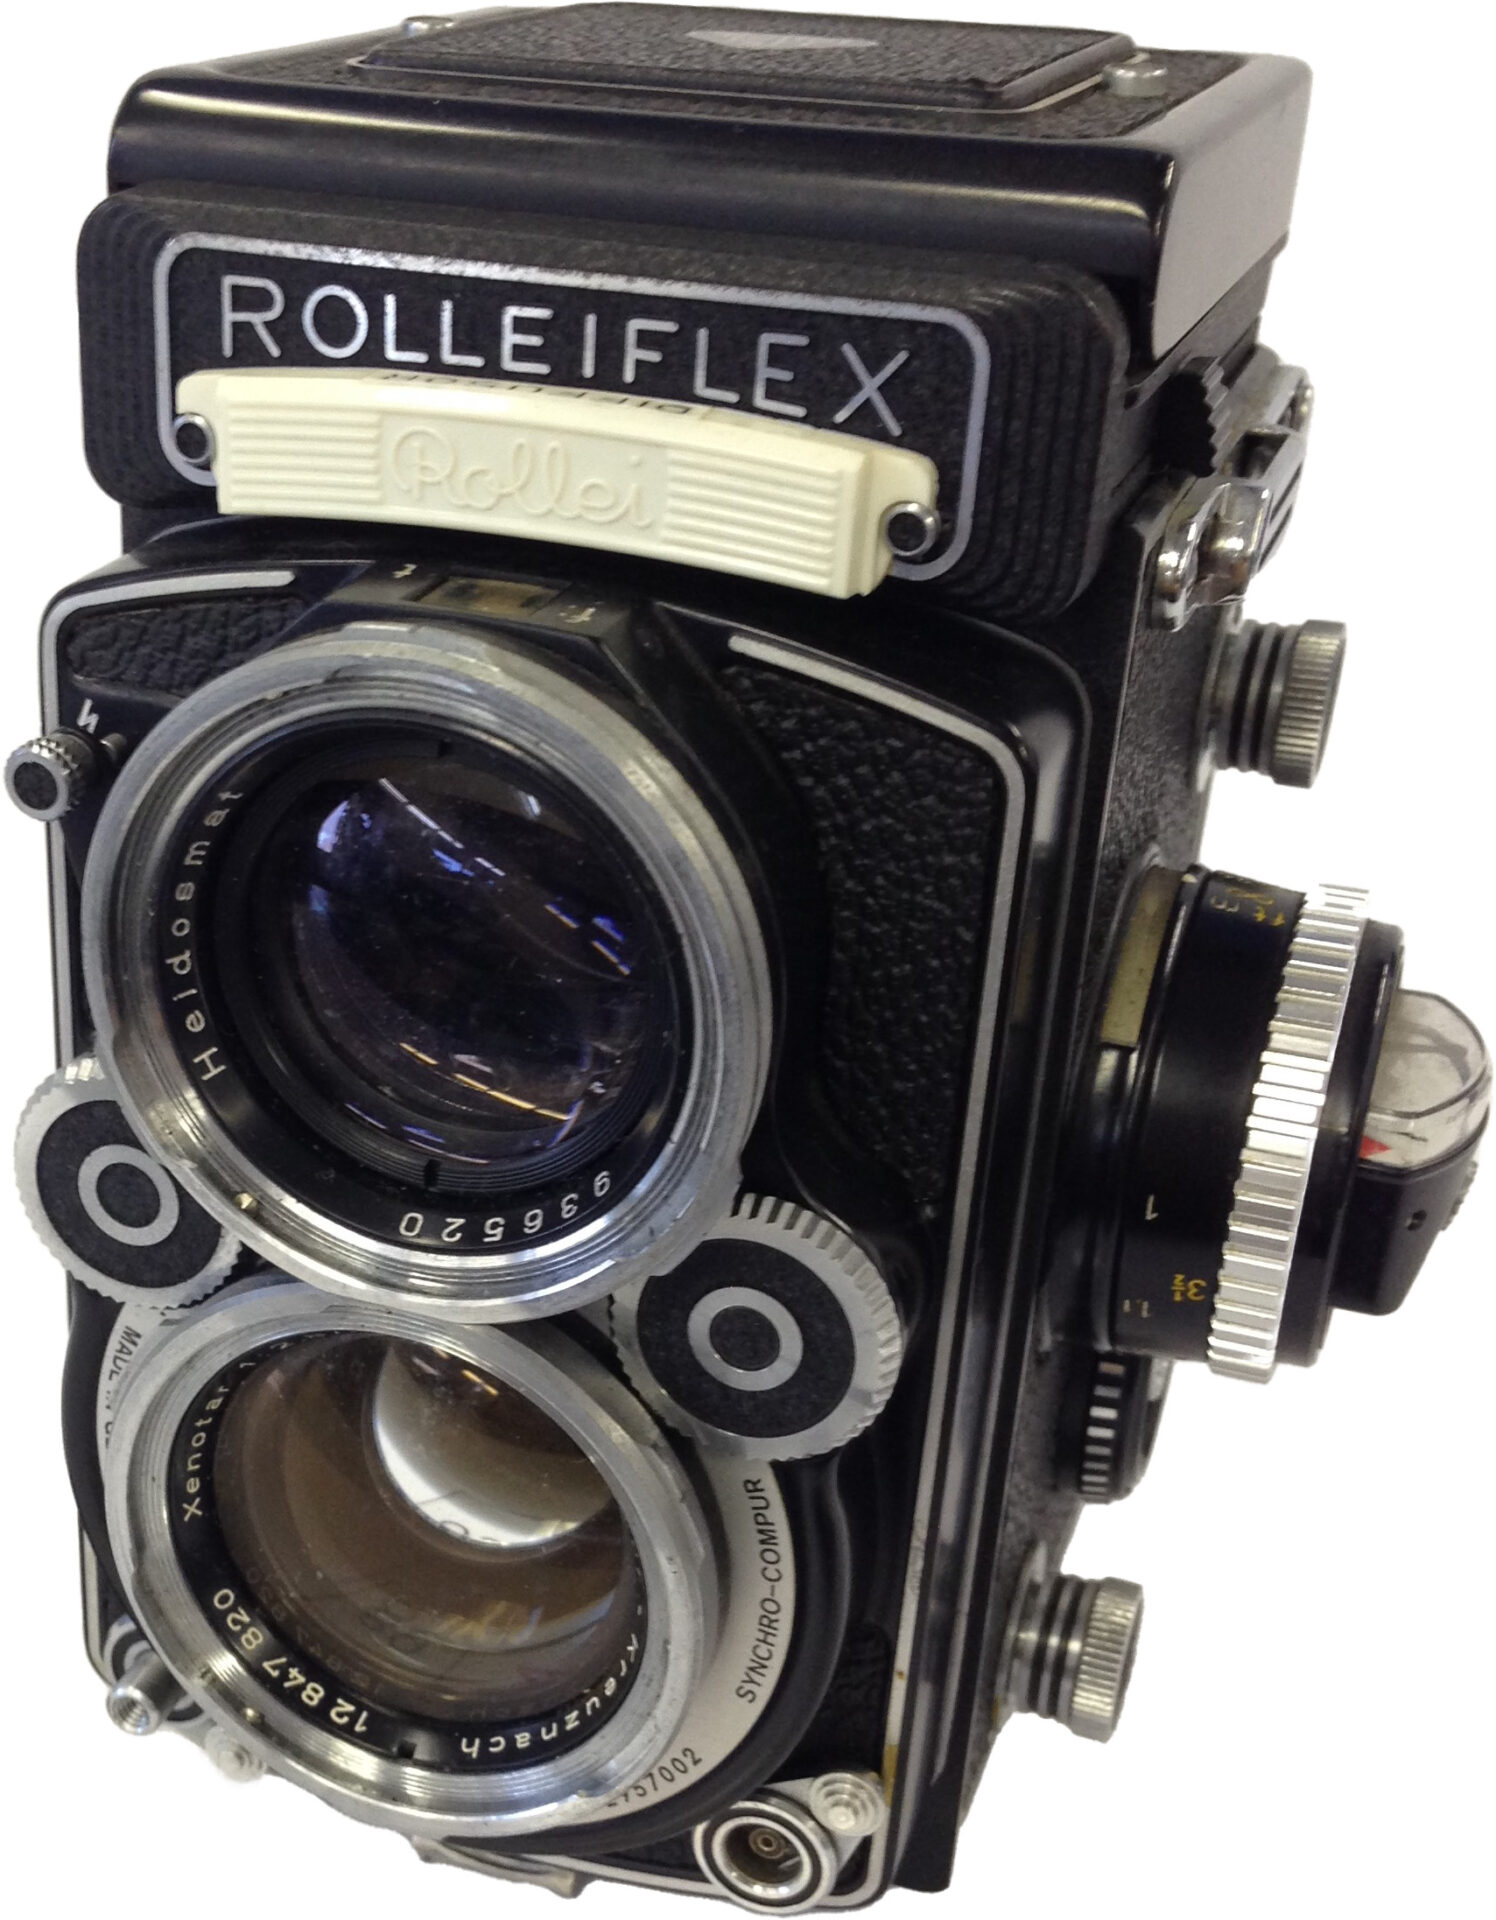 【ROLLEI(ローライ):ROLLEIFLEX】のカメラ出張買取実績